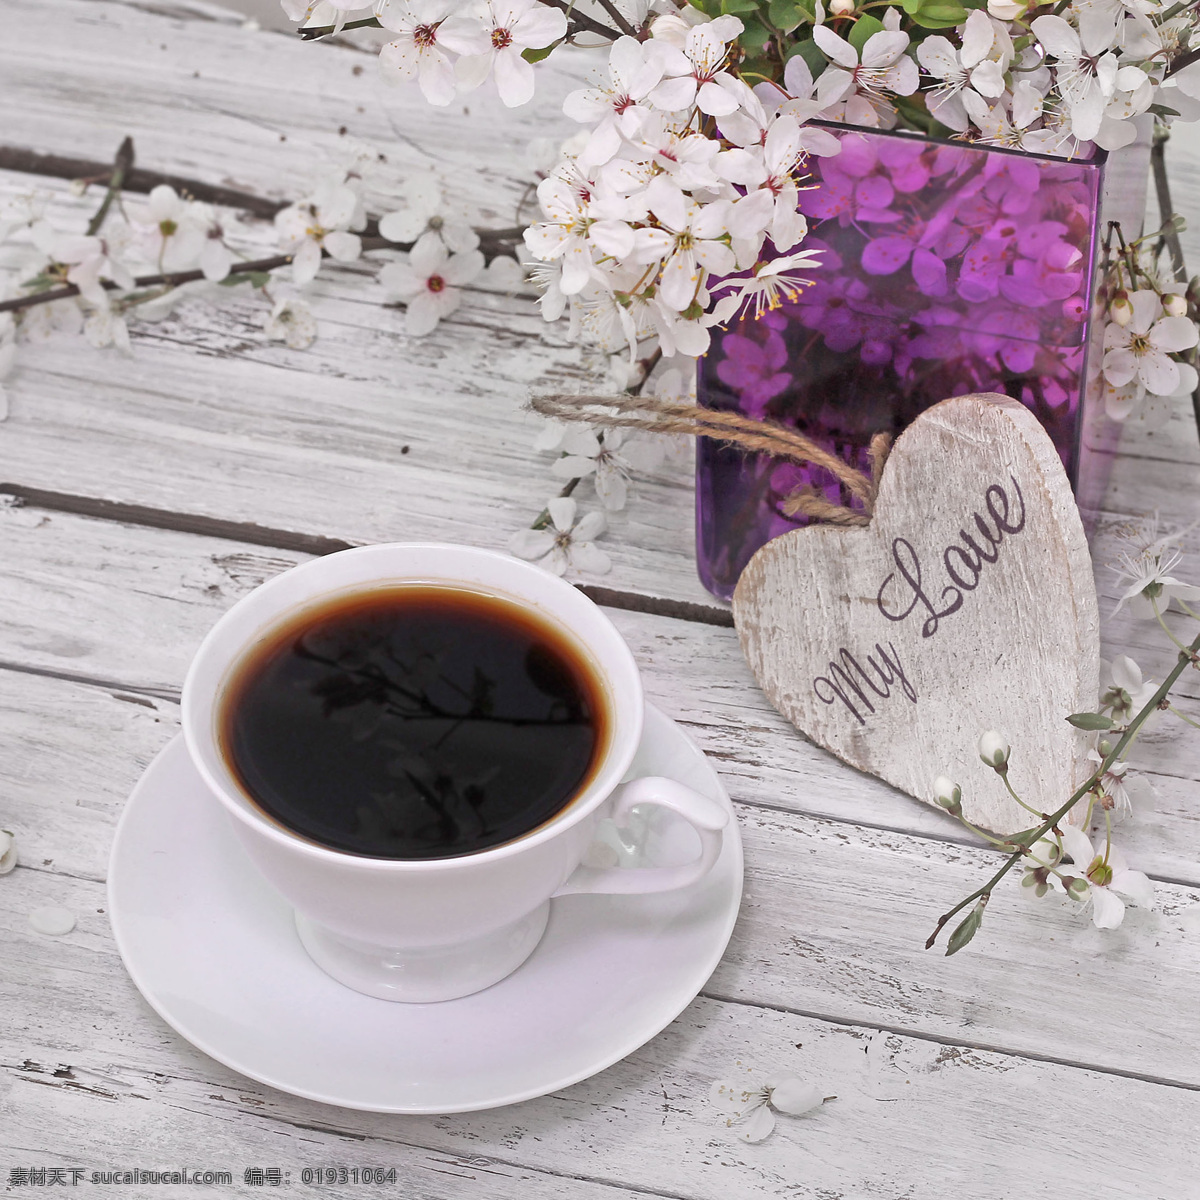 咖啡 背景 底纹 咖啡杯子 木板背景 心形 爱心 浪漫背景 咖啡图片 餐饮美食